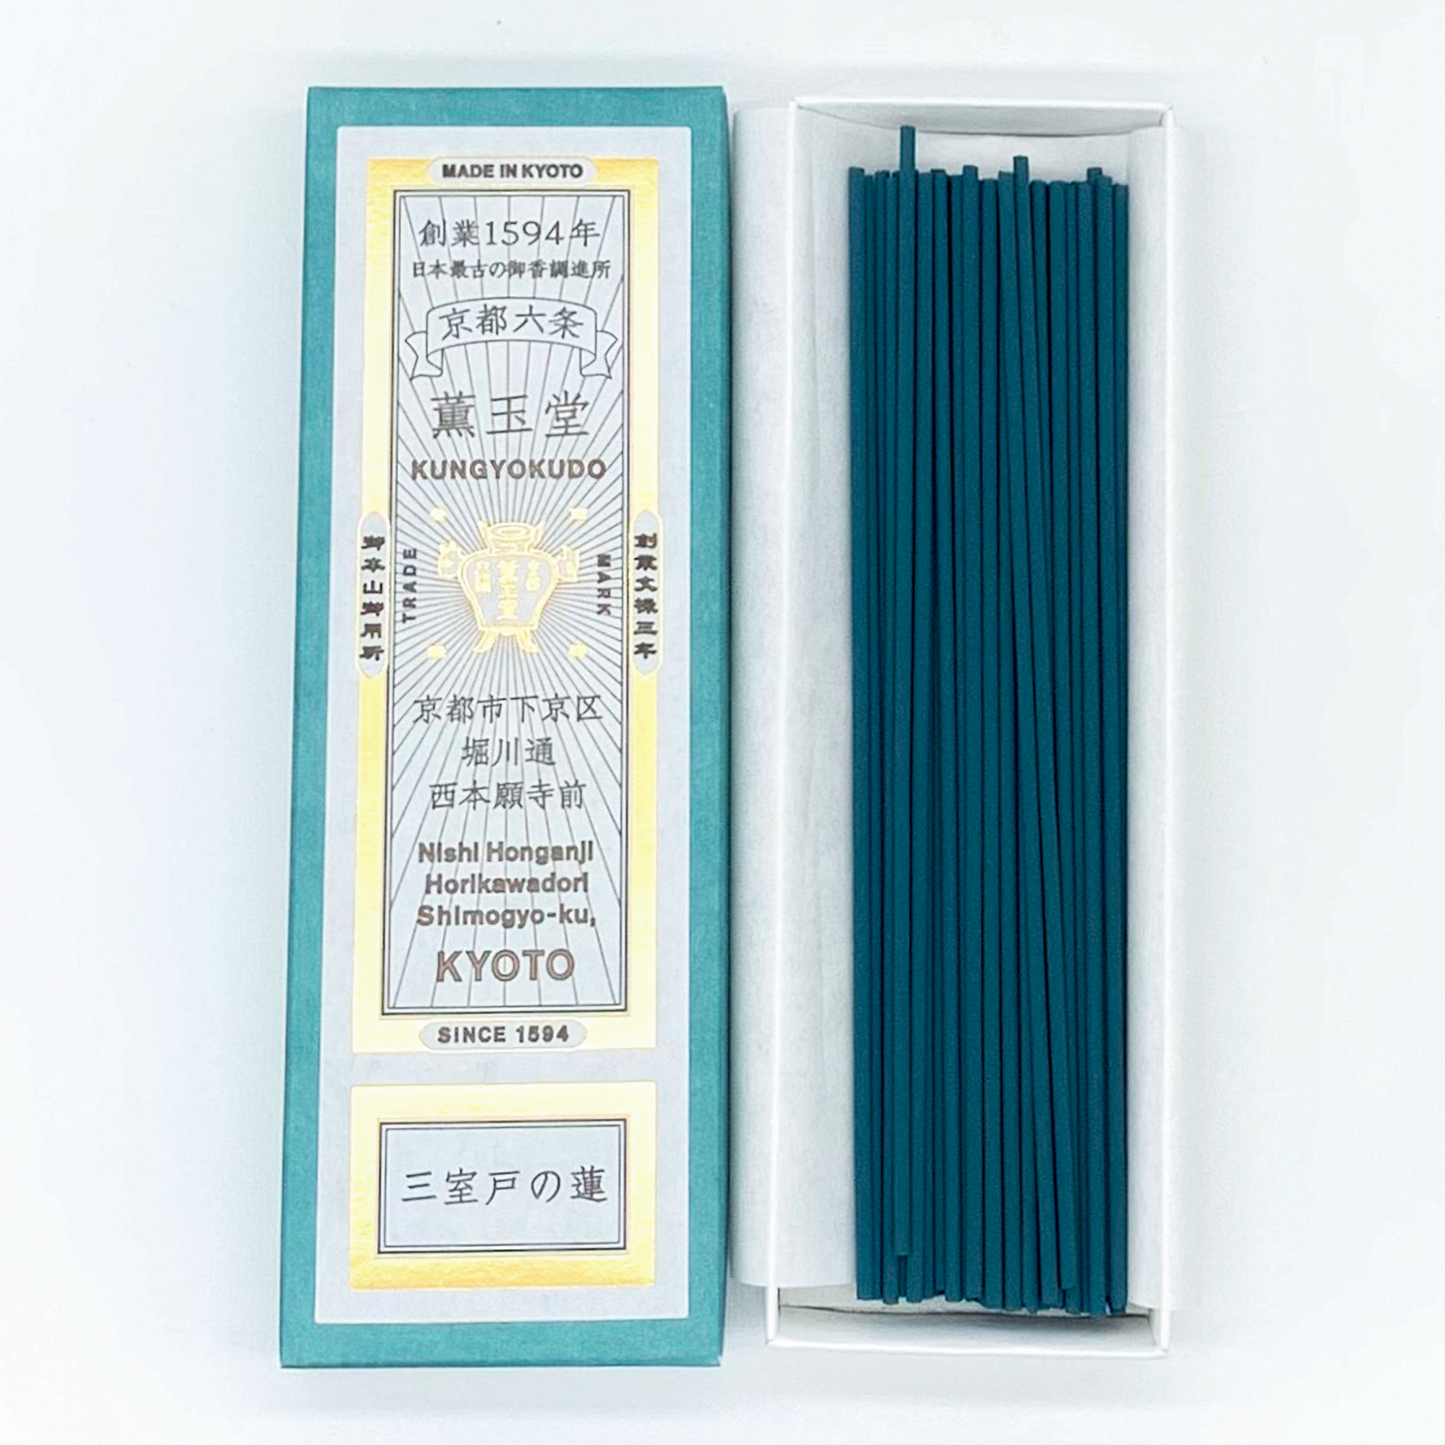 Kungyokudo Incense Sticks in Paper Box - Lotus